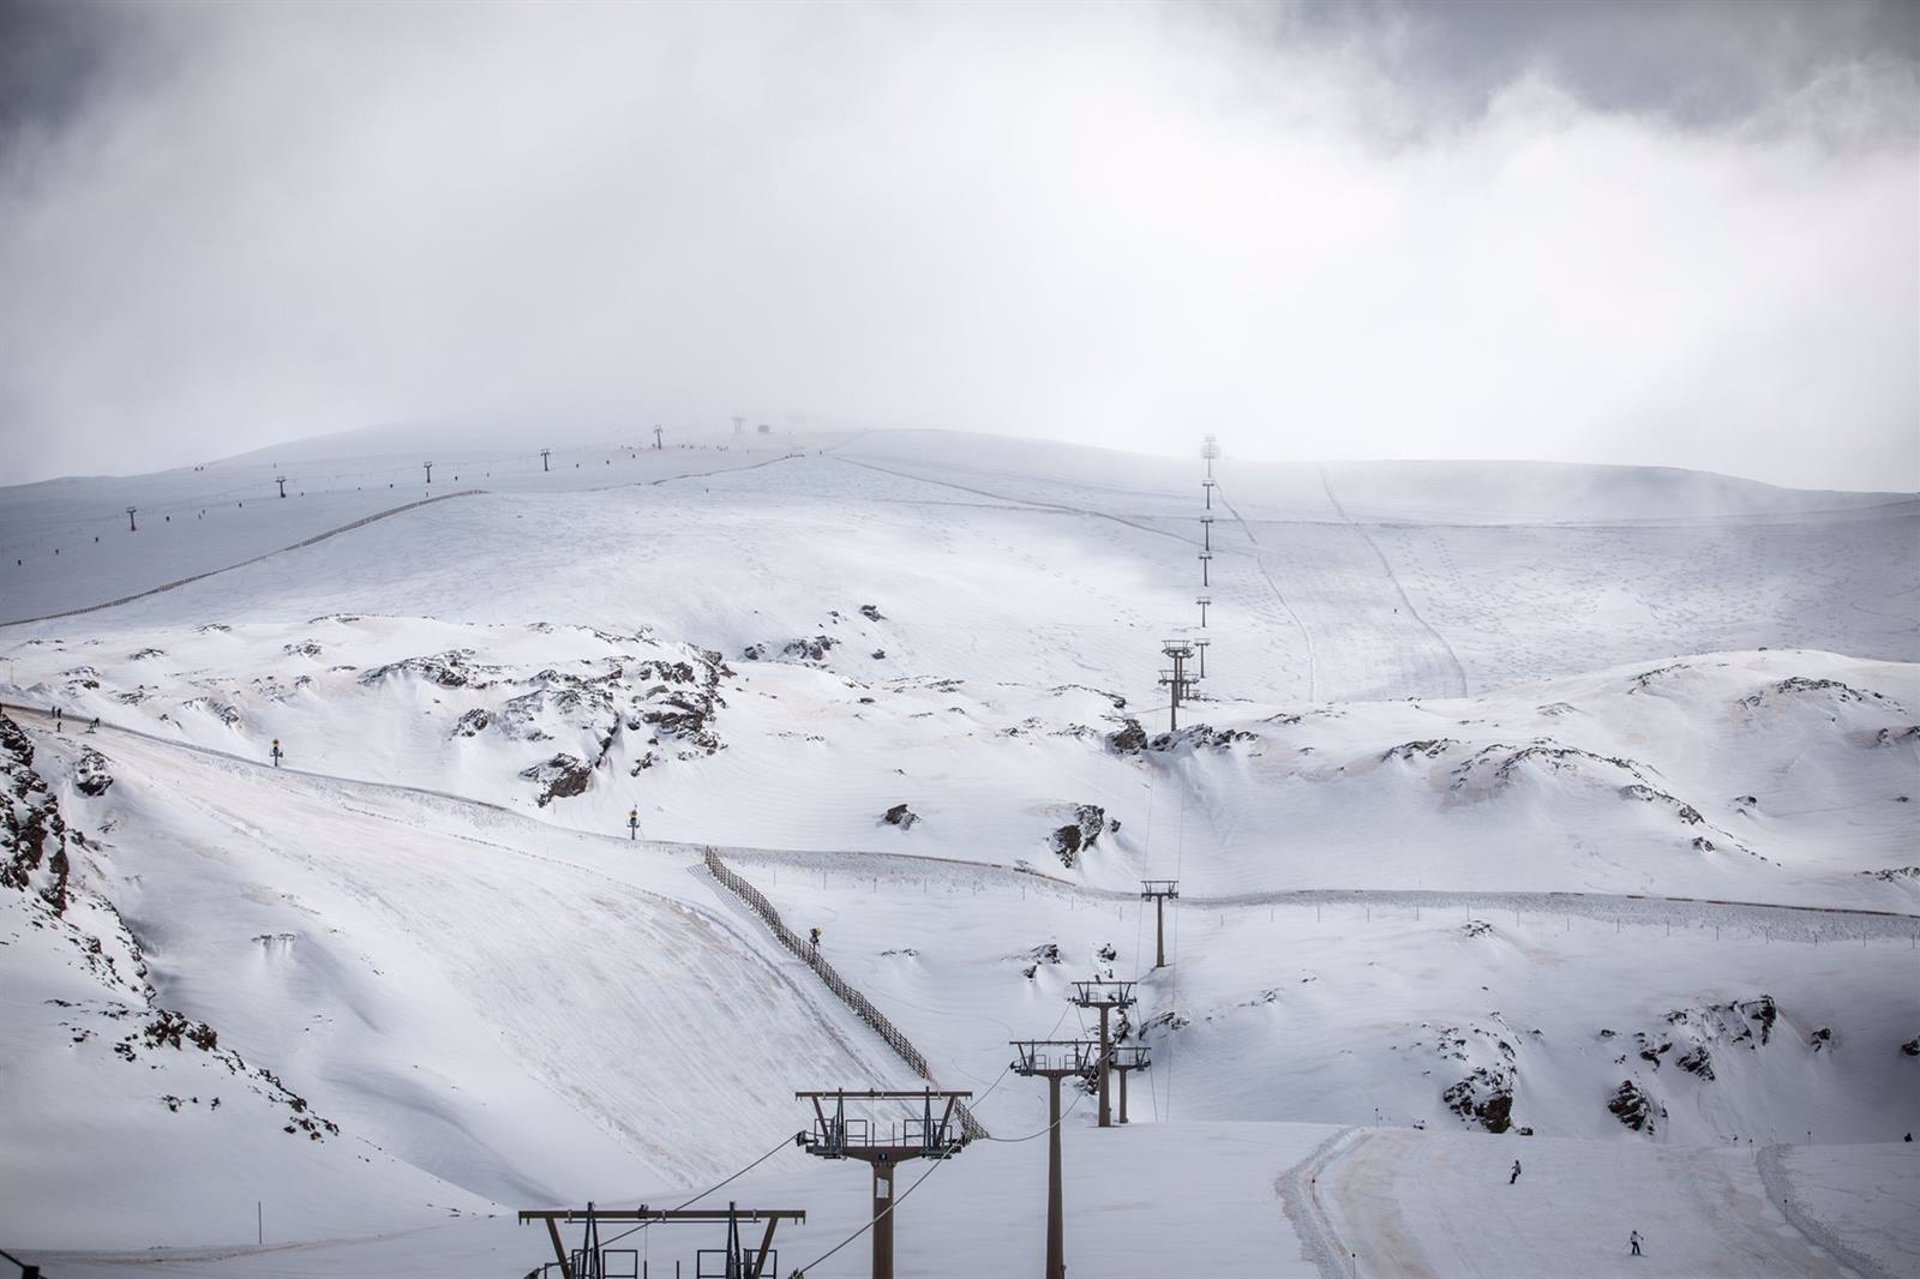 Sierra Nevada abre por primera vez esta temporada todas sus zonas esquiables tras las últimas nevadas